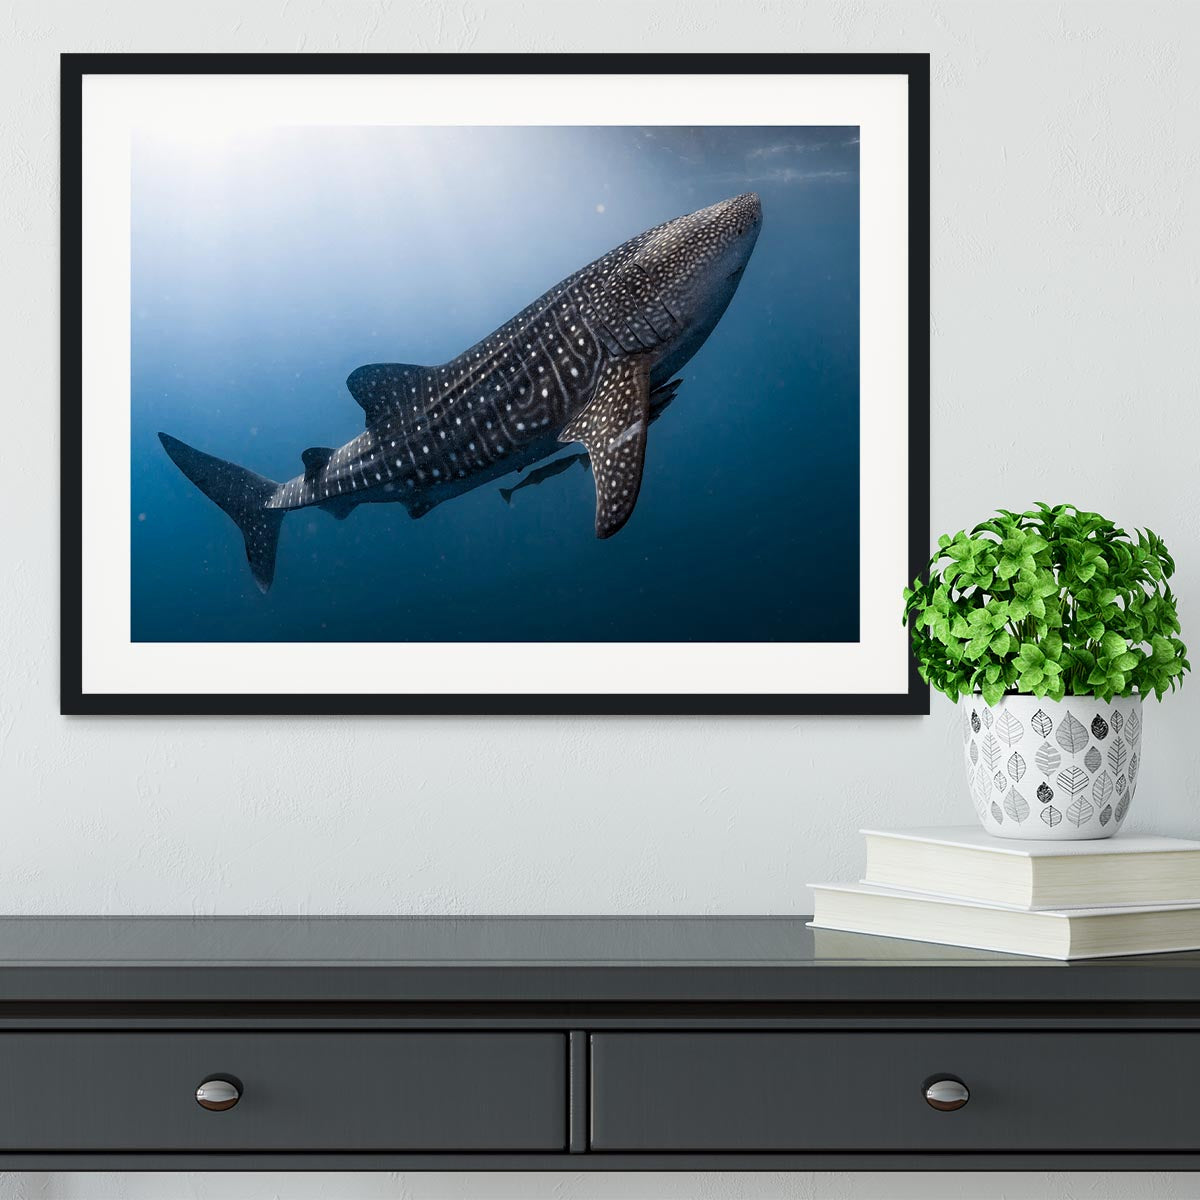 Whale Shark very near Framed Print - Canvas Art Rocks - 1